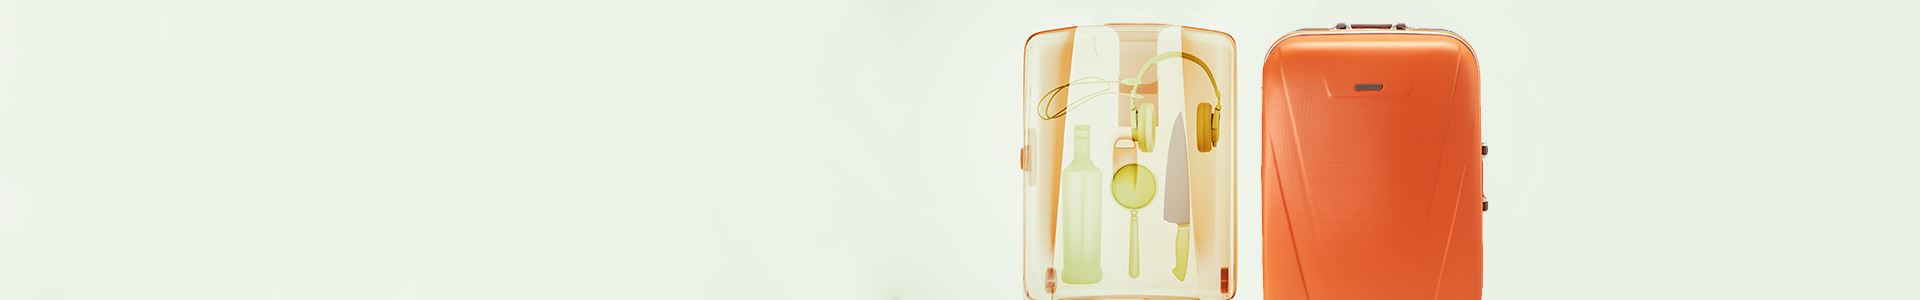 Photo d'un sac à roulettes orange avec une radiographie de son intérieur sur le côté gauche. La radiographie montre plusieurs objets : un couteau, un casque, une bouteille et une loupe.